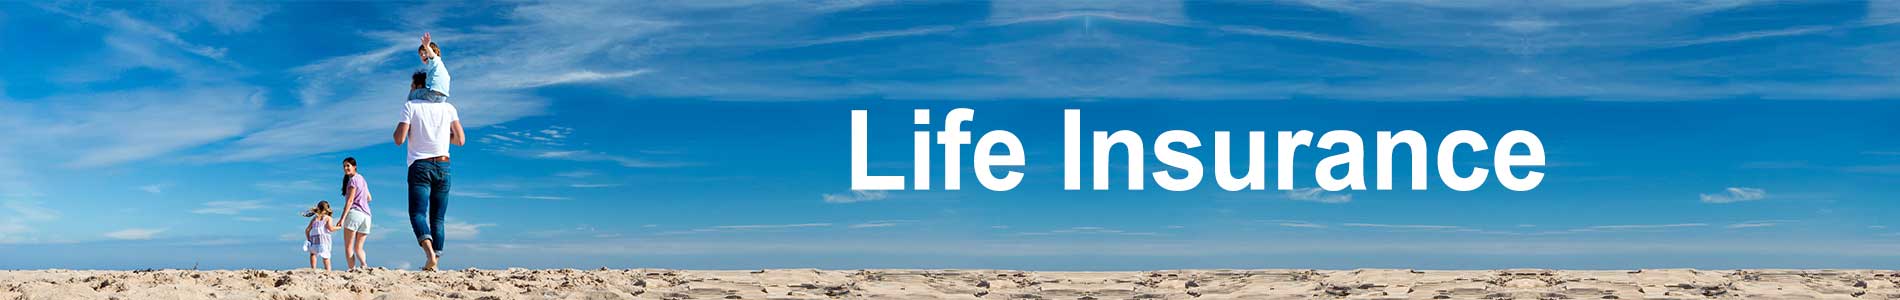 life-insurance-banner